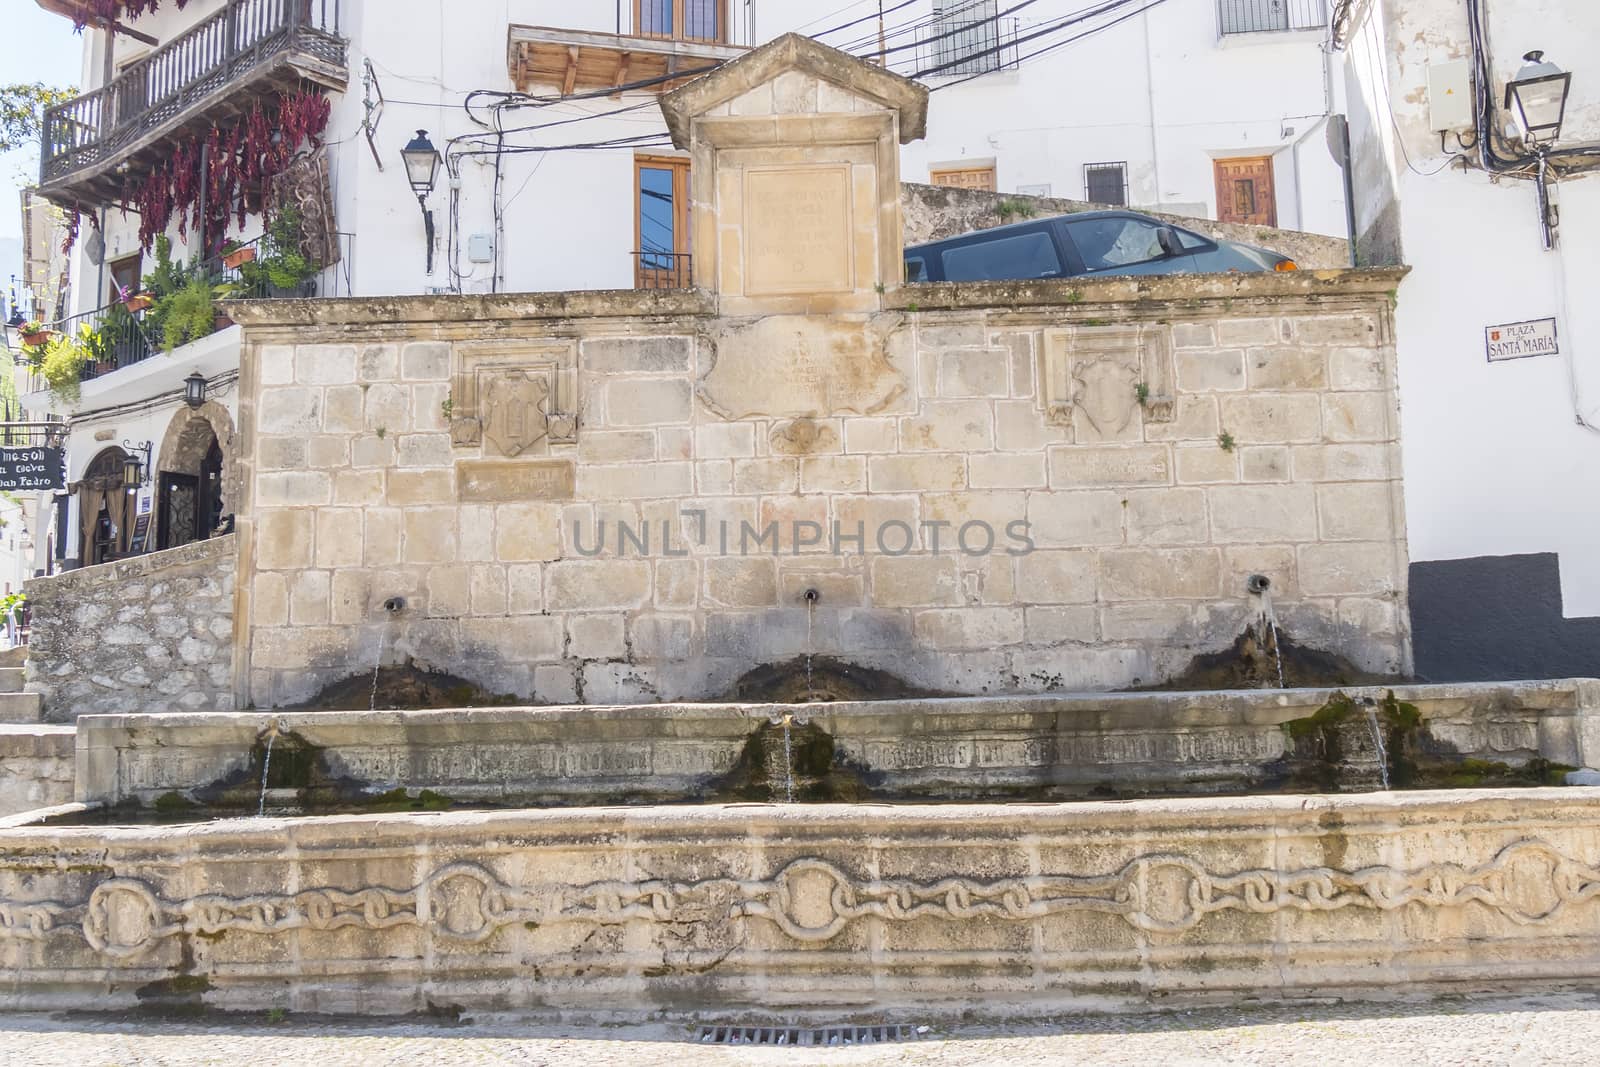 Fuente de los tres caños in Santa Maria square, Cazorla, Jaen,  by max8xam